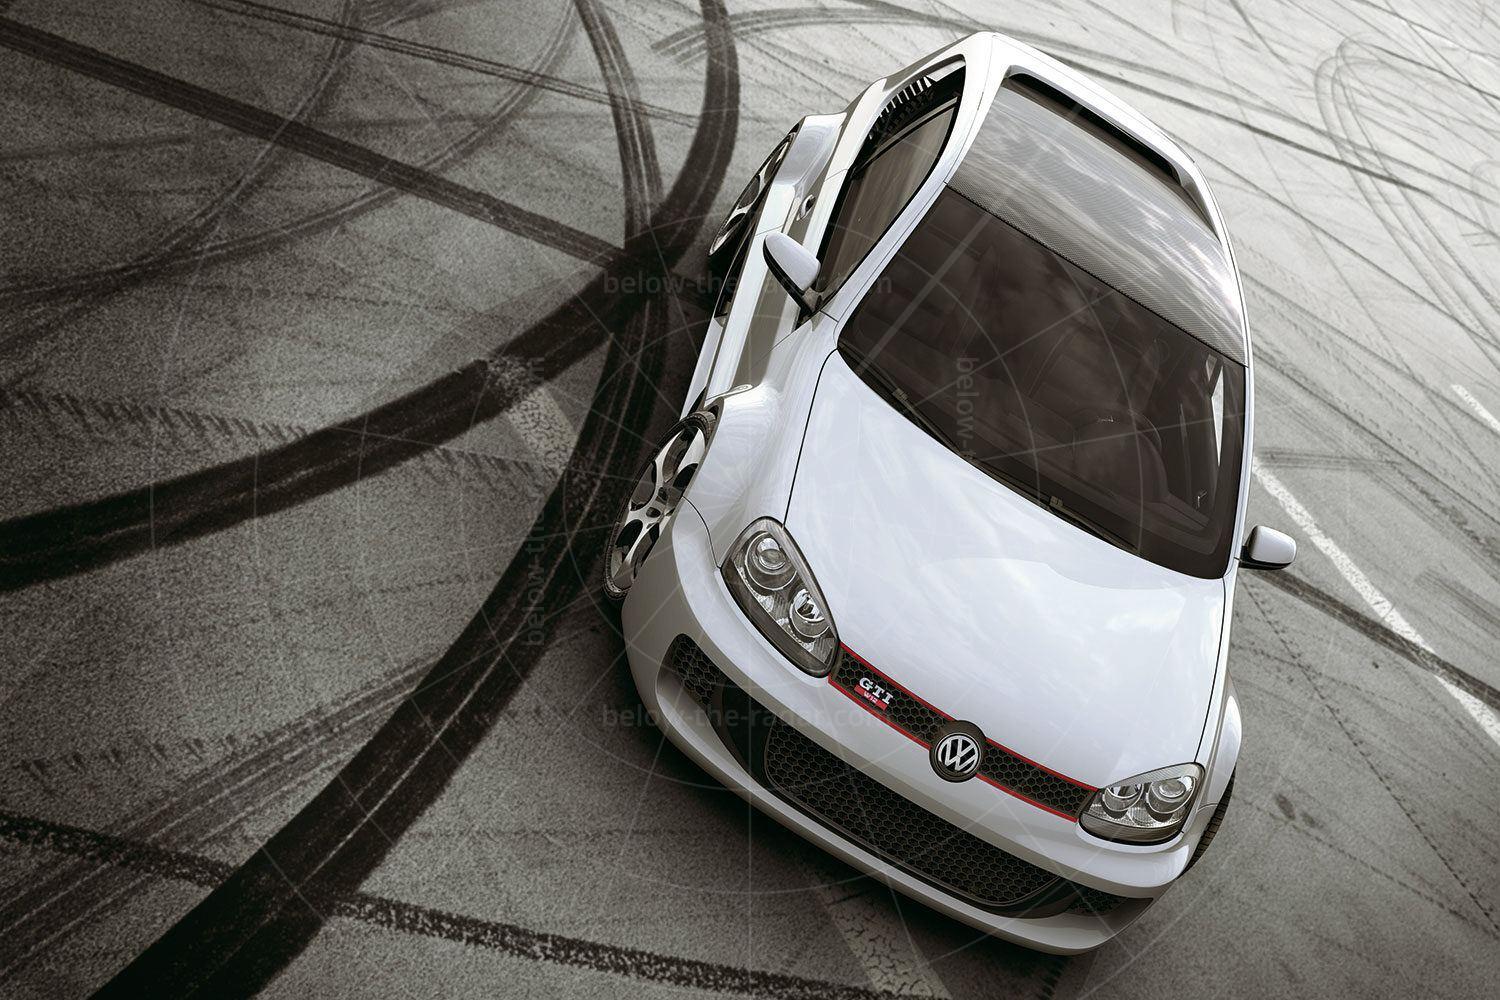 Volkswagen Golf W12 Pic: Volkswagen | Volkswagen Golf W12